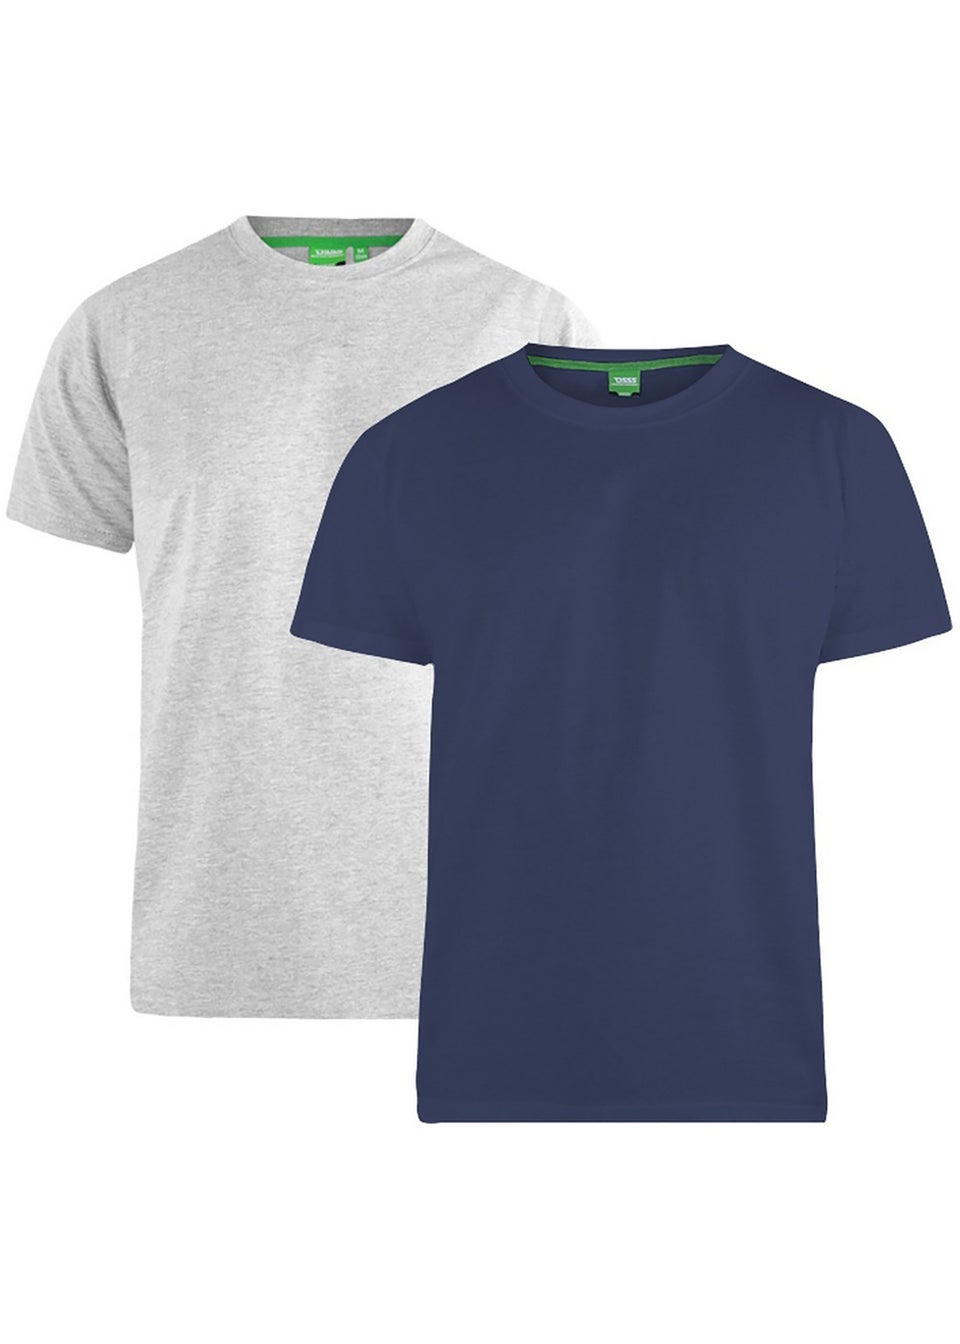 Duke Grey/Navy Fenton Kingsize Round Neck T-shirts (Pack of 2)